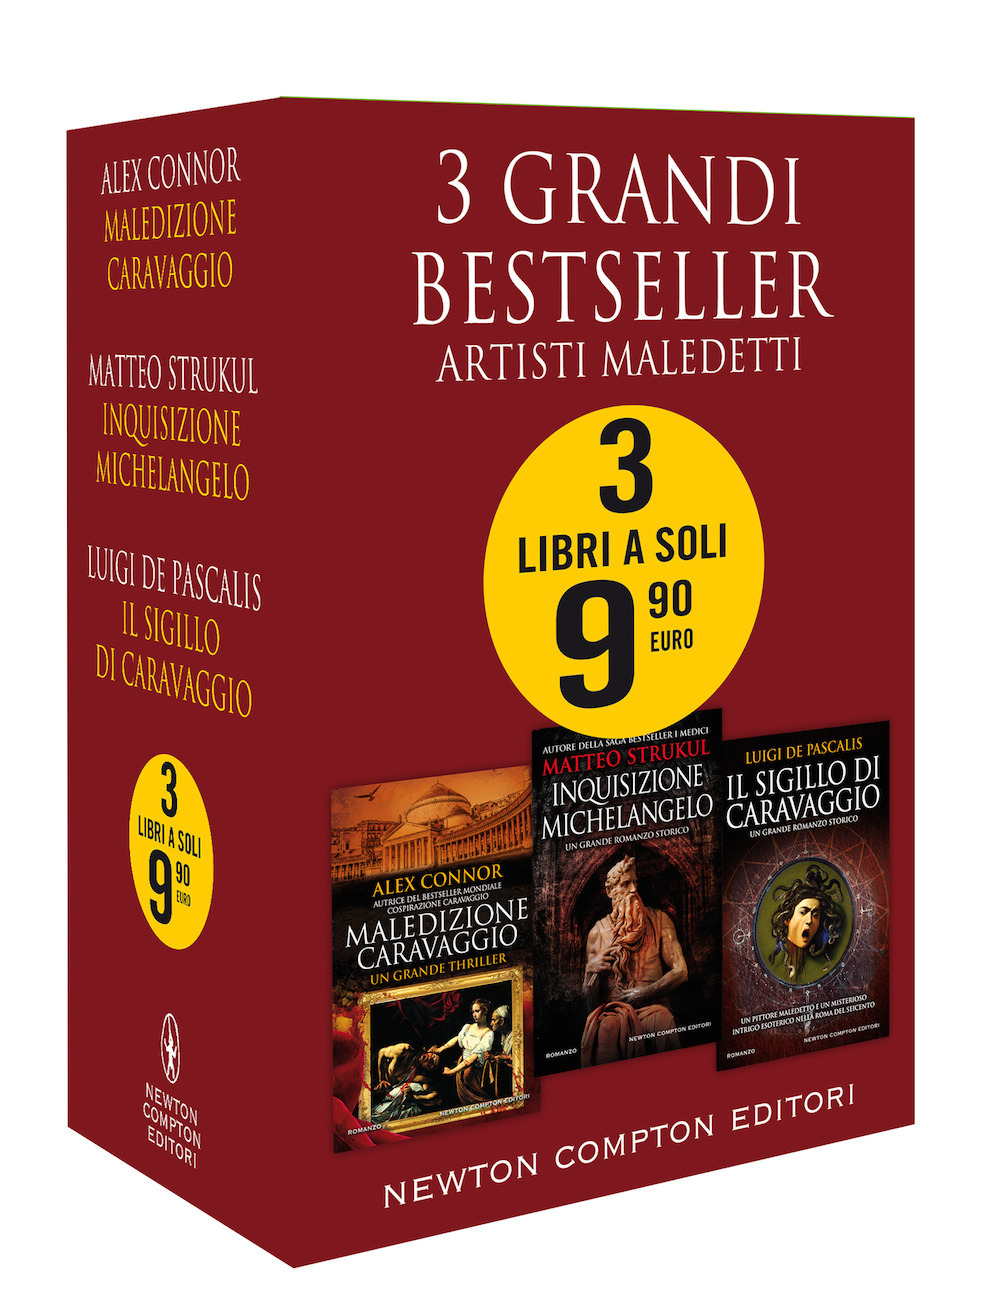 3 grandi bestseller. Artisti maledetti: Maledizione Caravaggio-Inquisizione Michelangelo-Il sigillo di Caravaggio